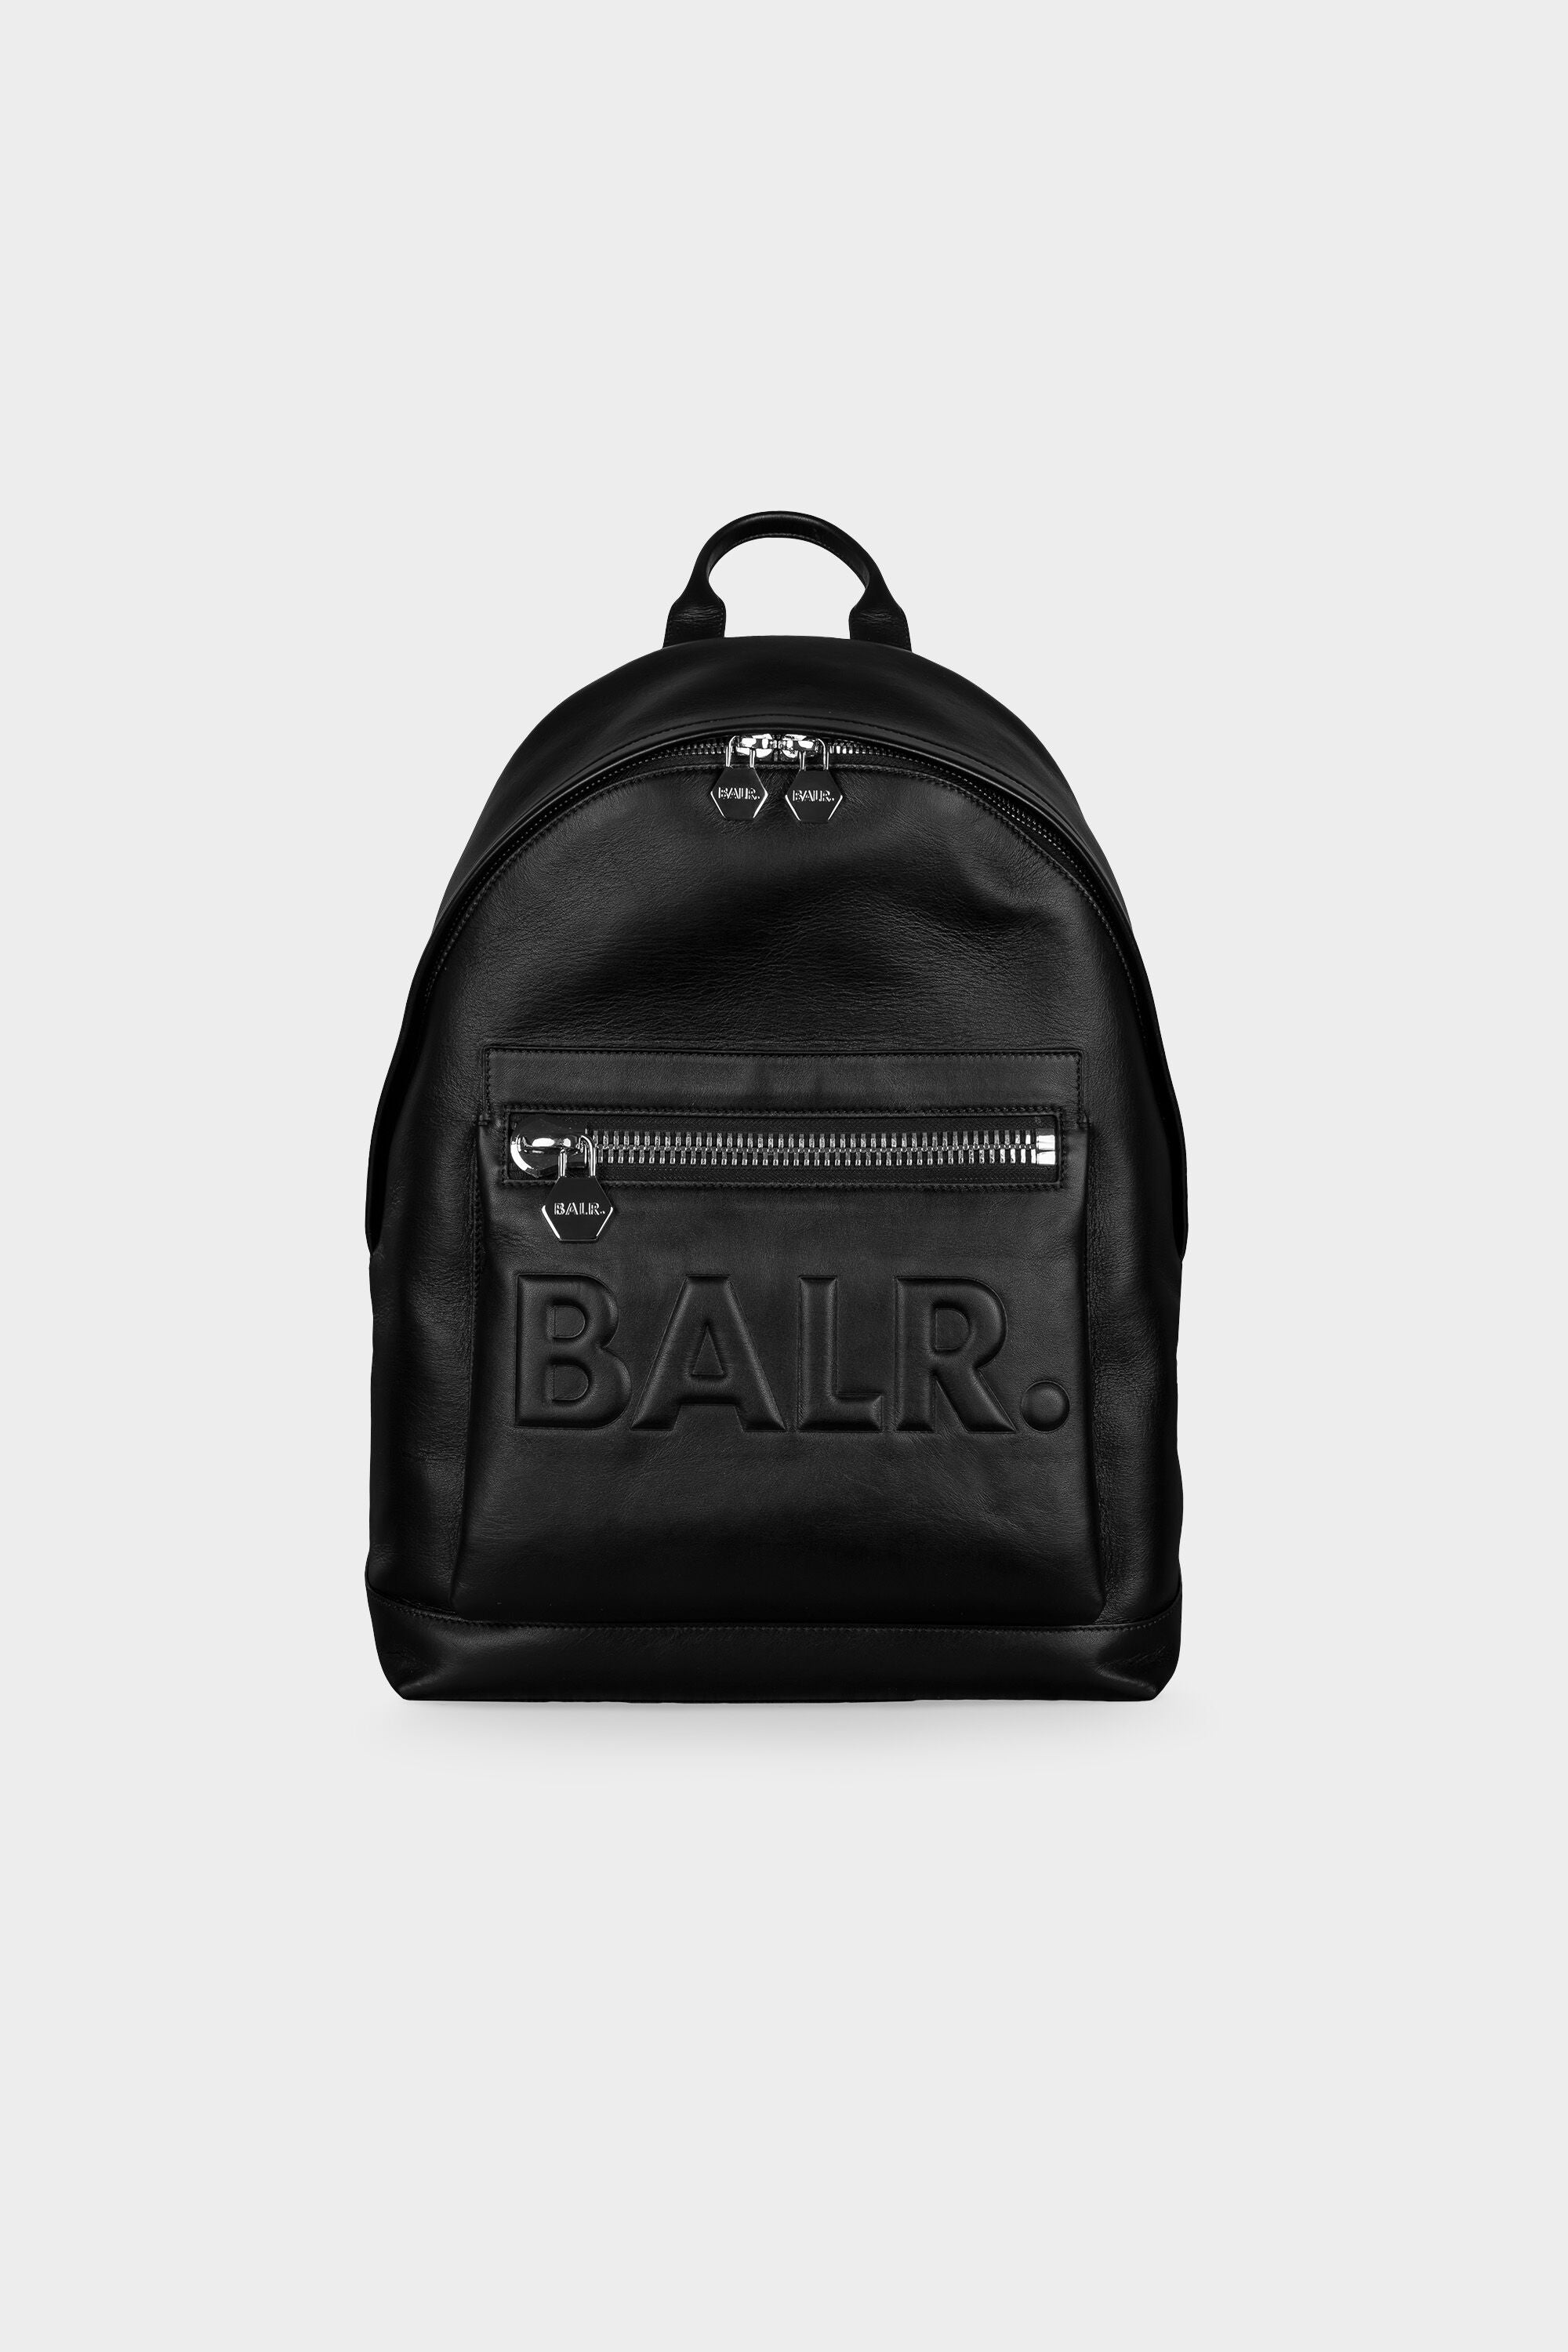 BT Leather Grande Backpack Black